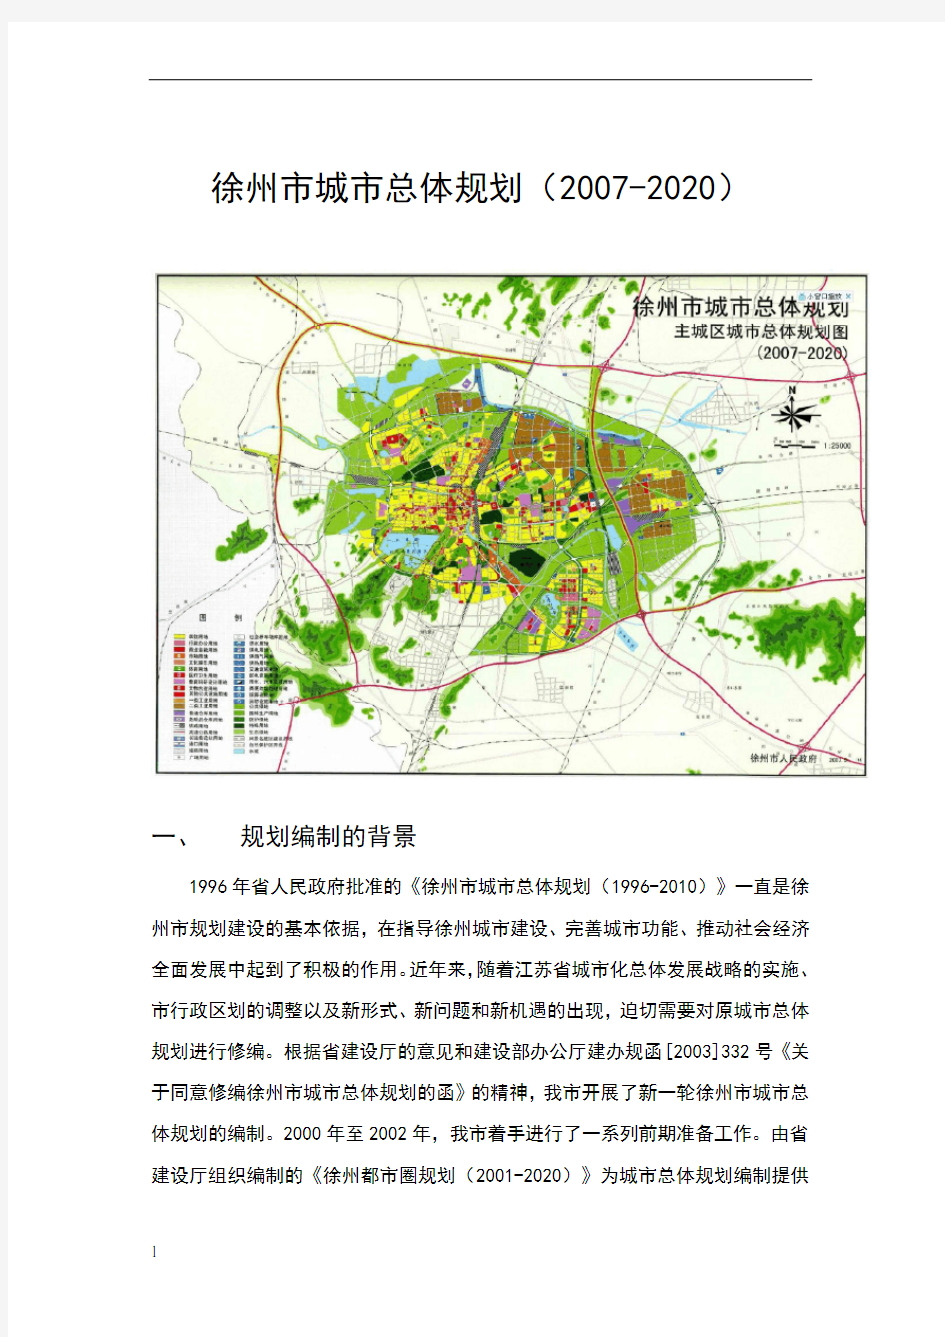 2019-2020年整理徐州市城市总体计划汇编 (1)